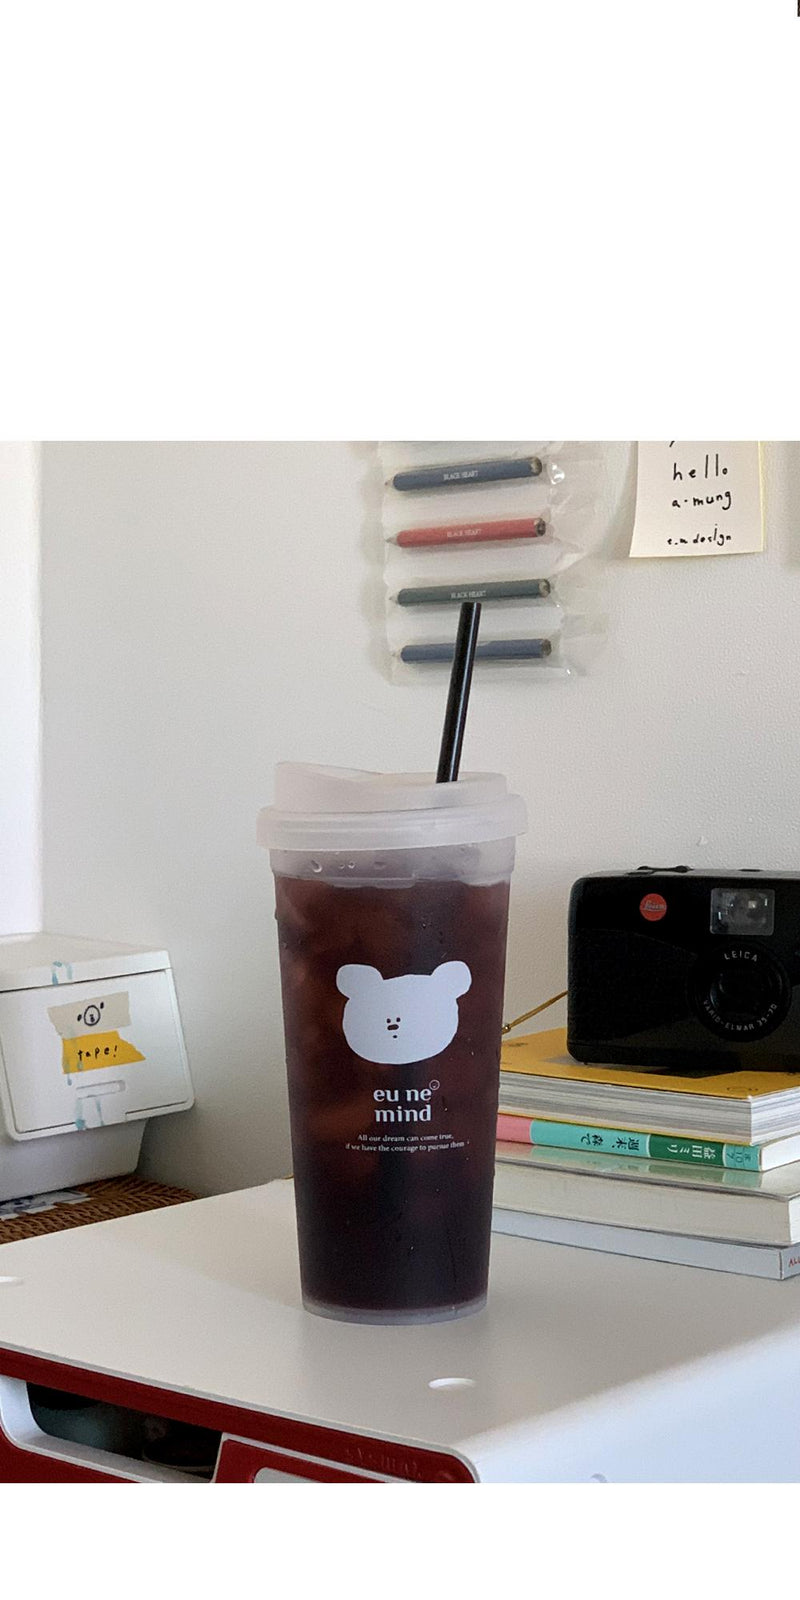 [HODU3"] agom reusable cup